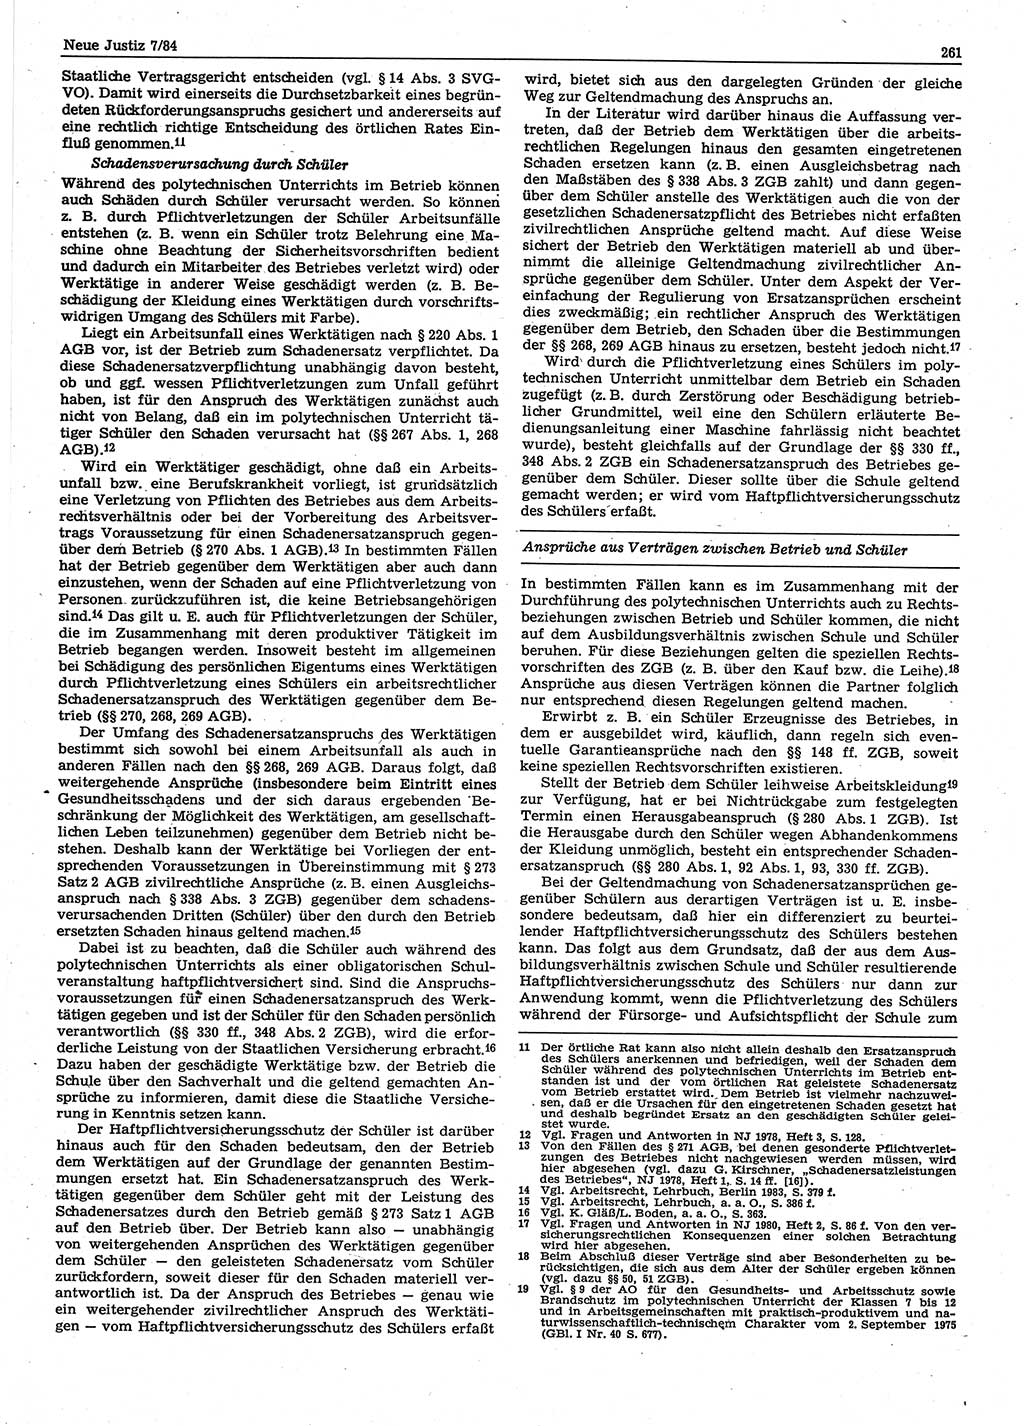 Neue Justiz (NJ), Zeitschrift für sozialistisches Recht und Gesetzlichkeit [Deutsche Demokratische Republik (DDR)], 38. Jahrgang 1984, Seite 261 (NJ DDR 1984, S. 261)